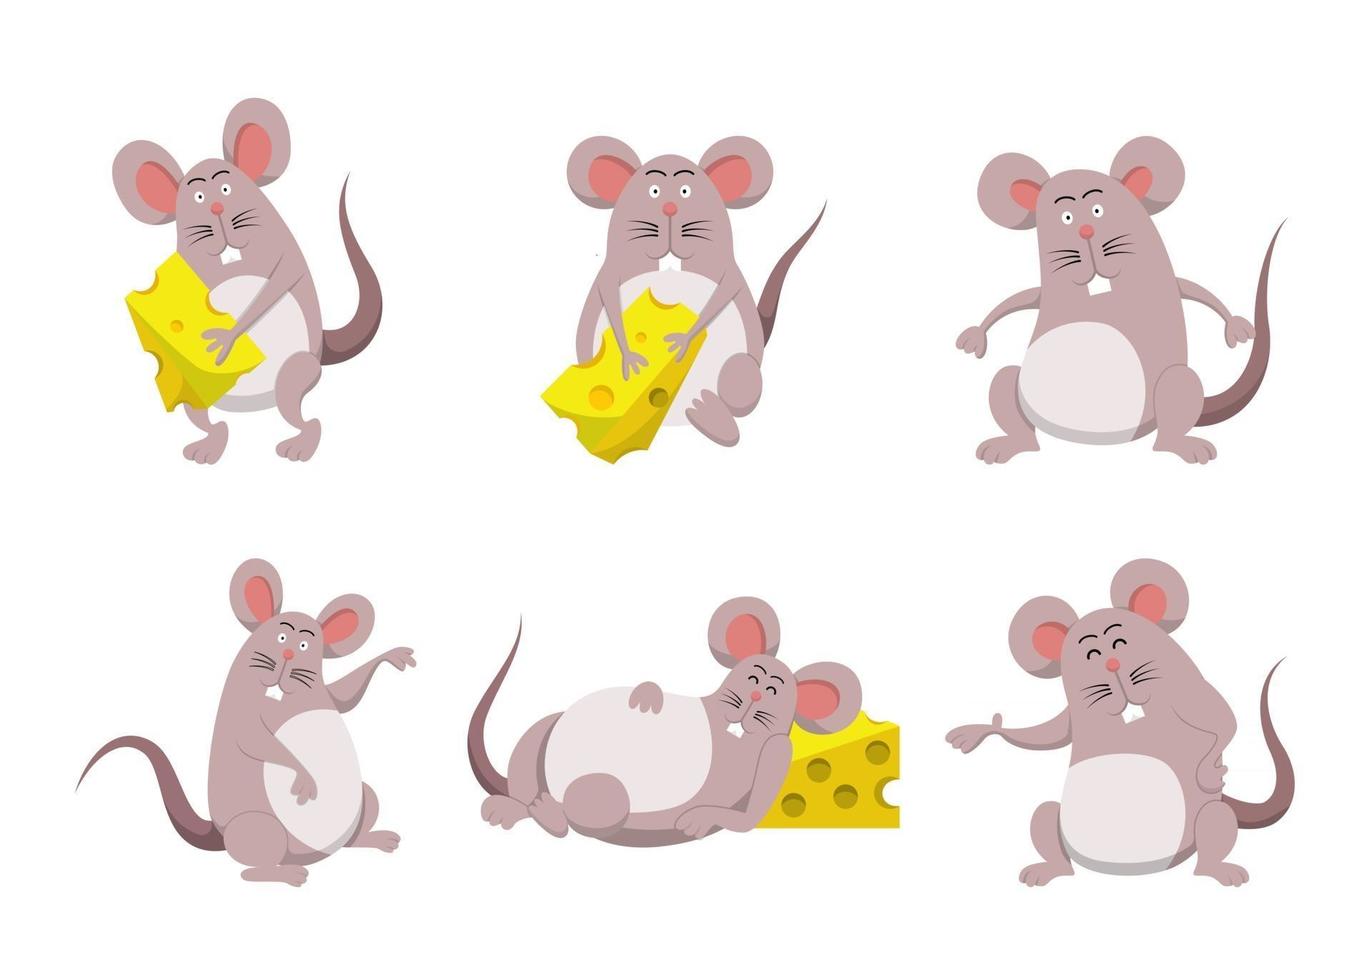 Paquete de personajes de dibujos animados de rata y queso lindo aislado ilustración vectorial plana vector